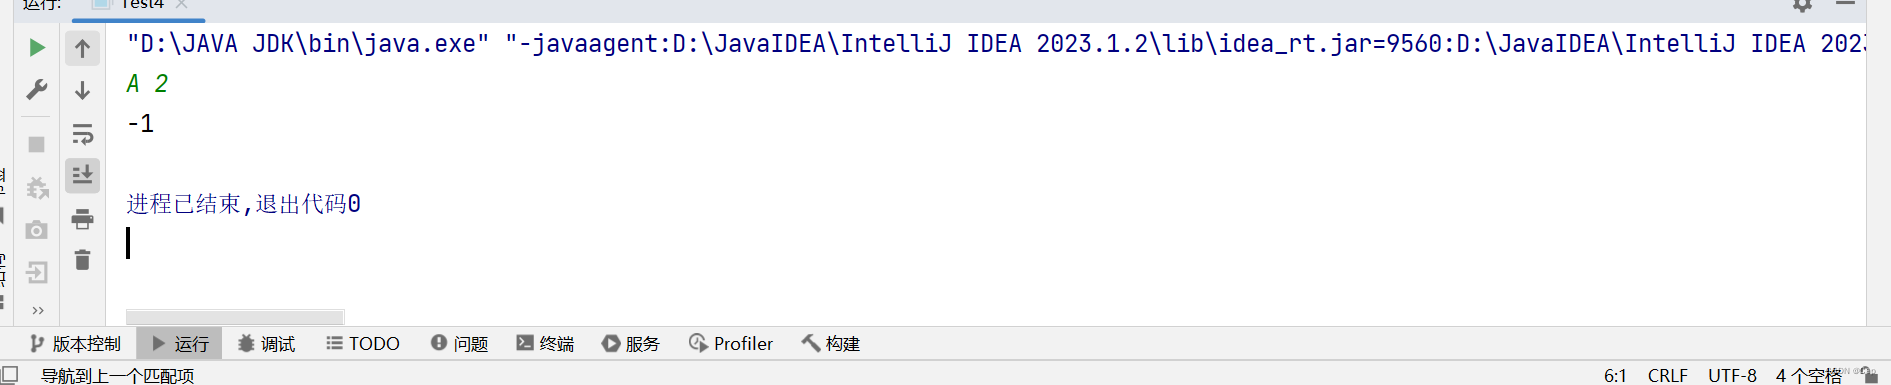 Java练习题 2022 -4